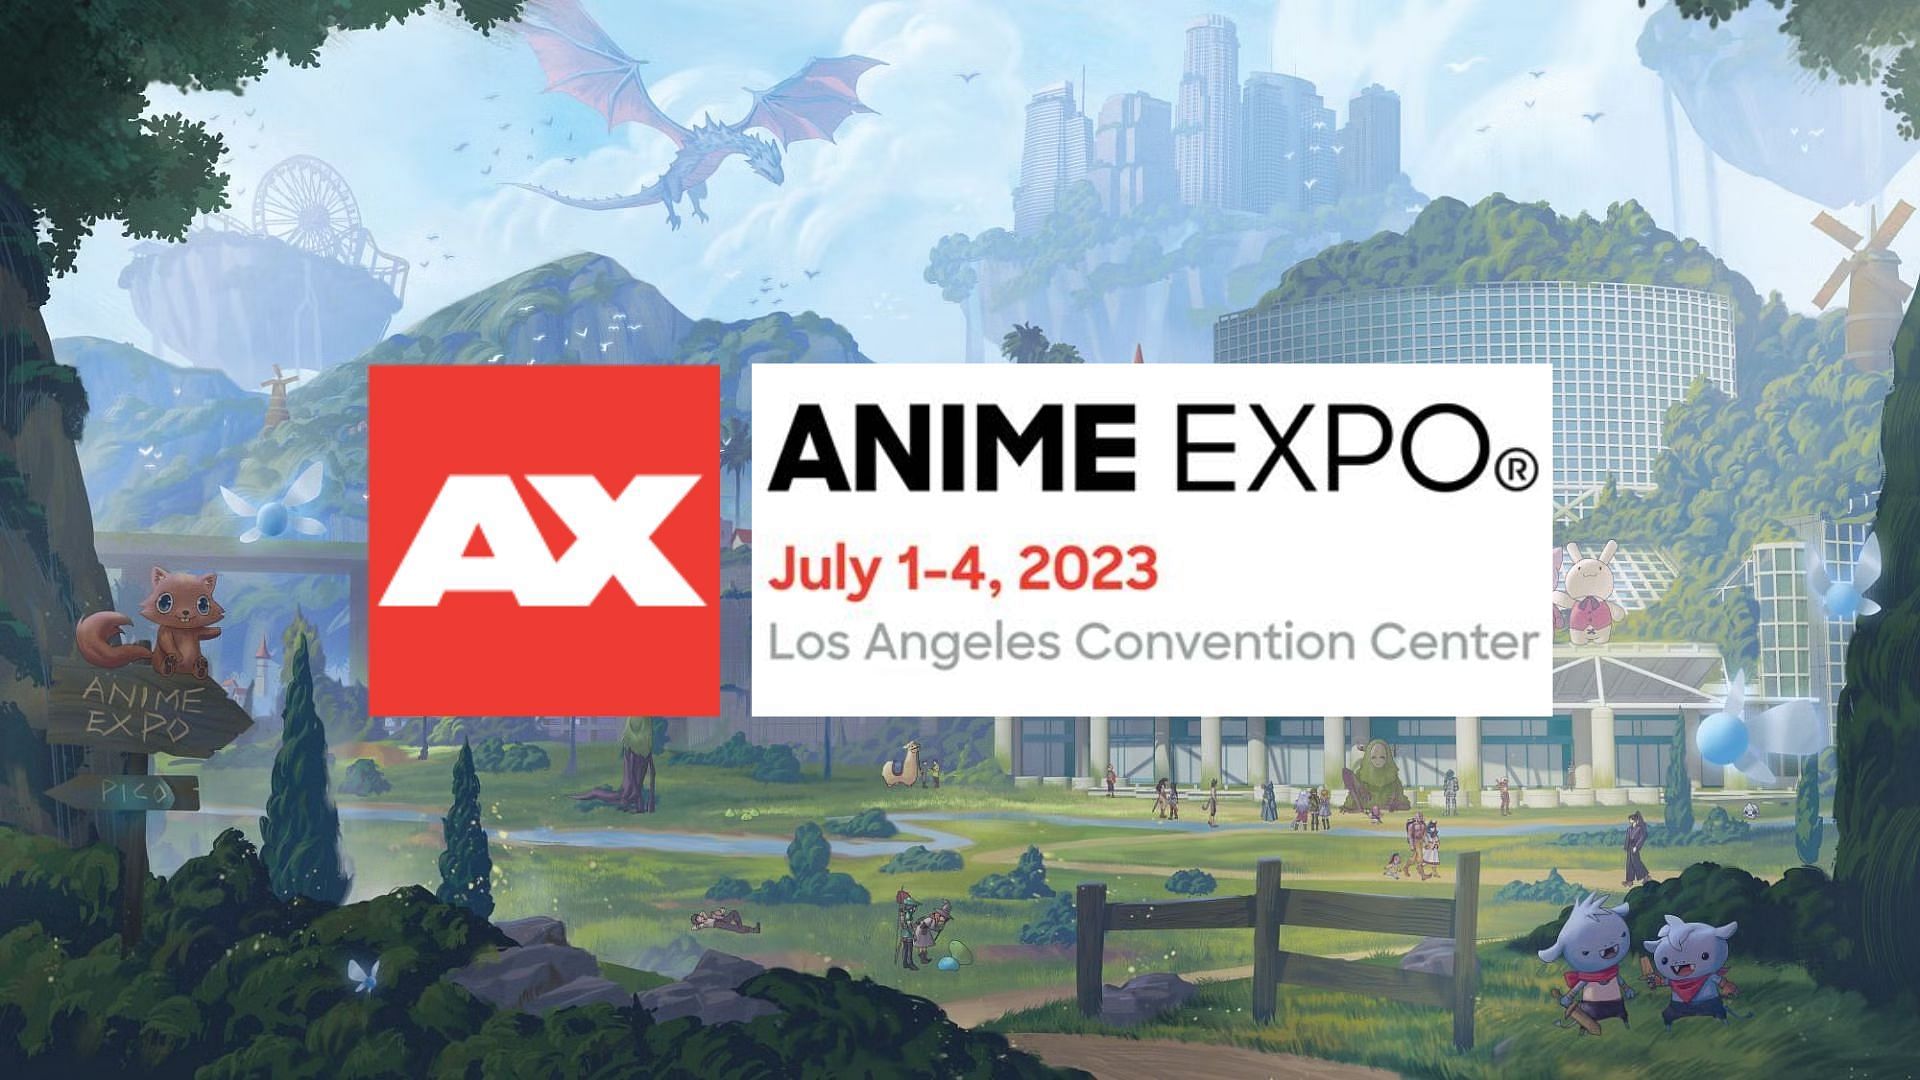 Anime Expo 2022 Premier Badge  ranimeexpo